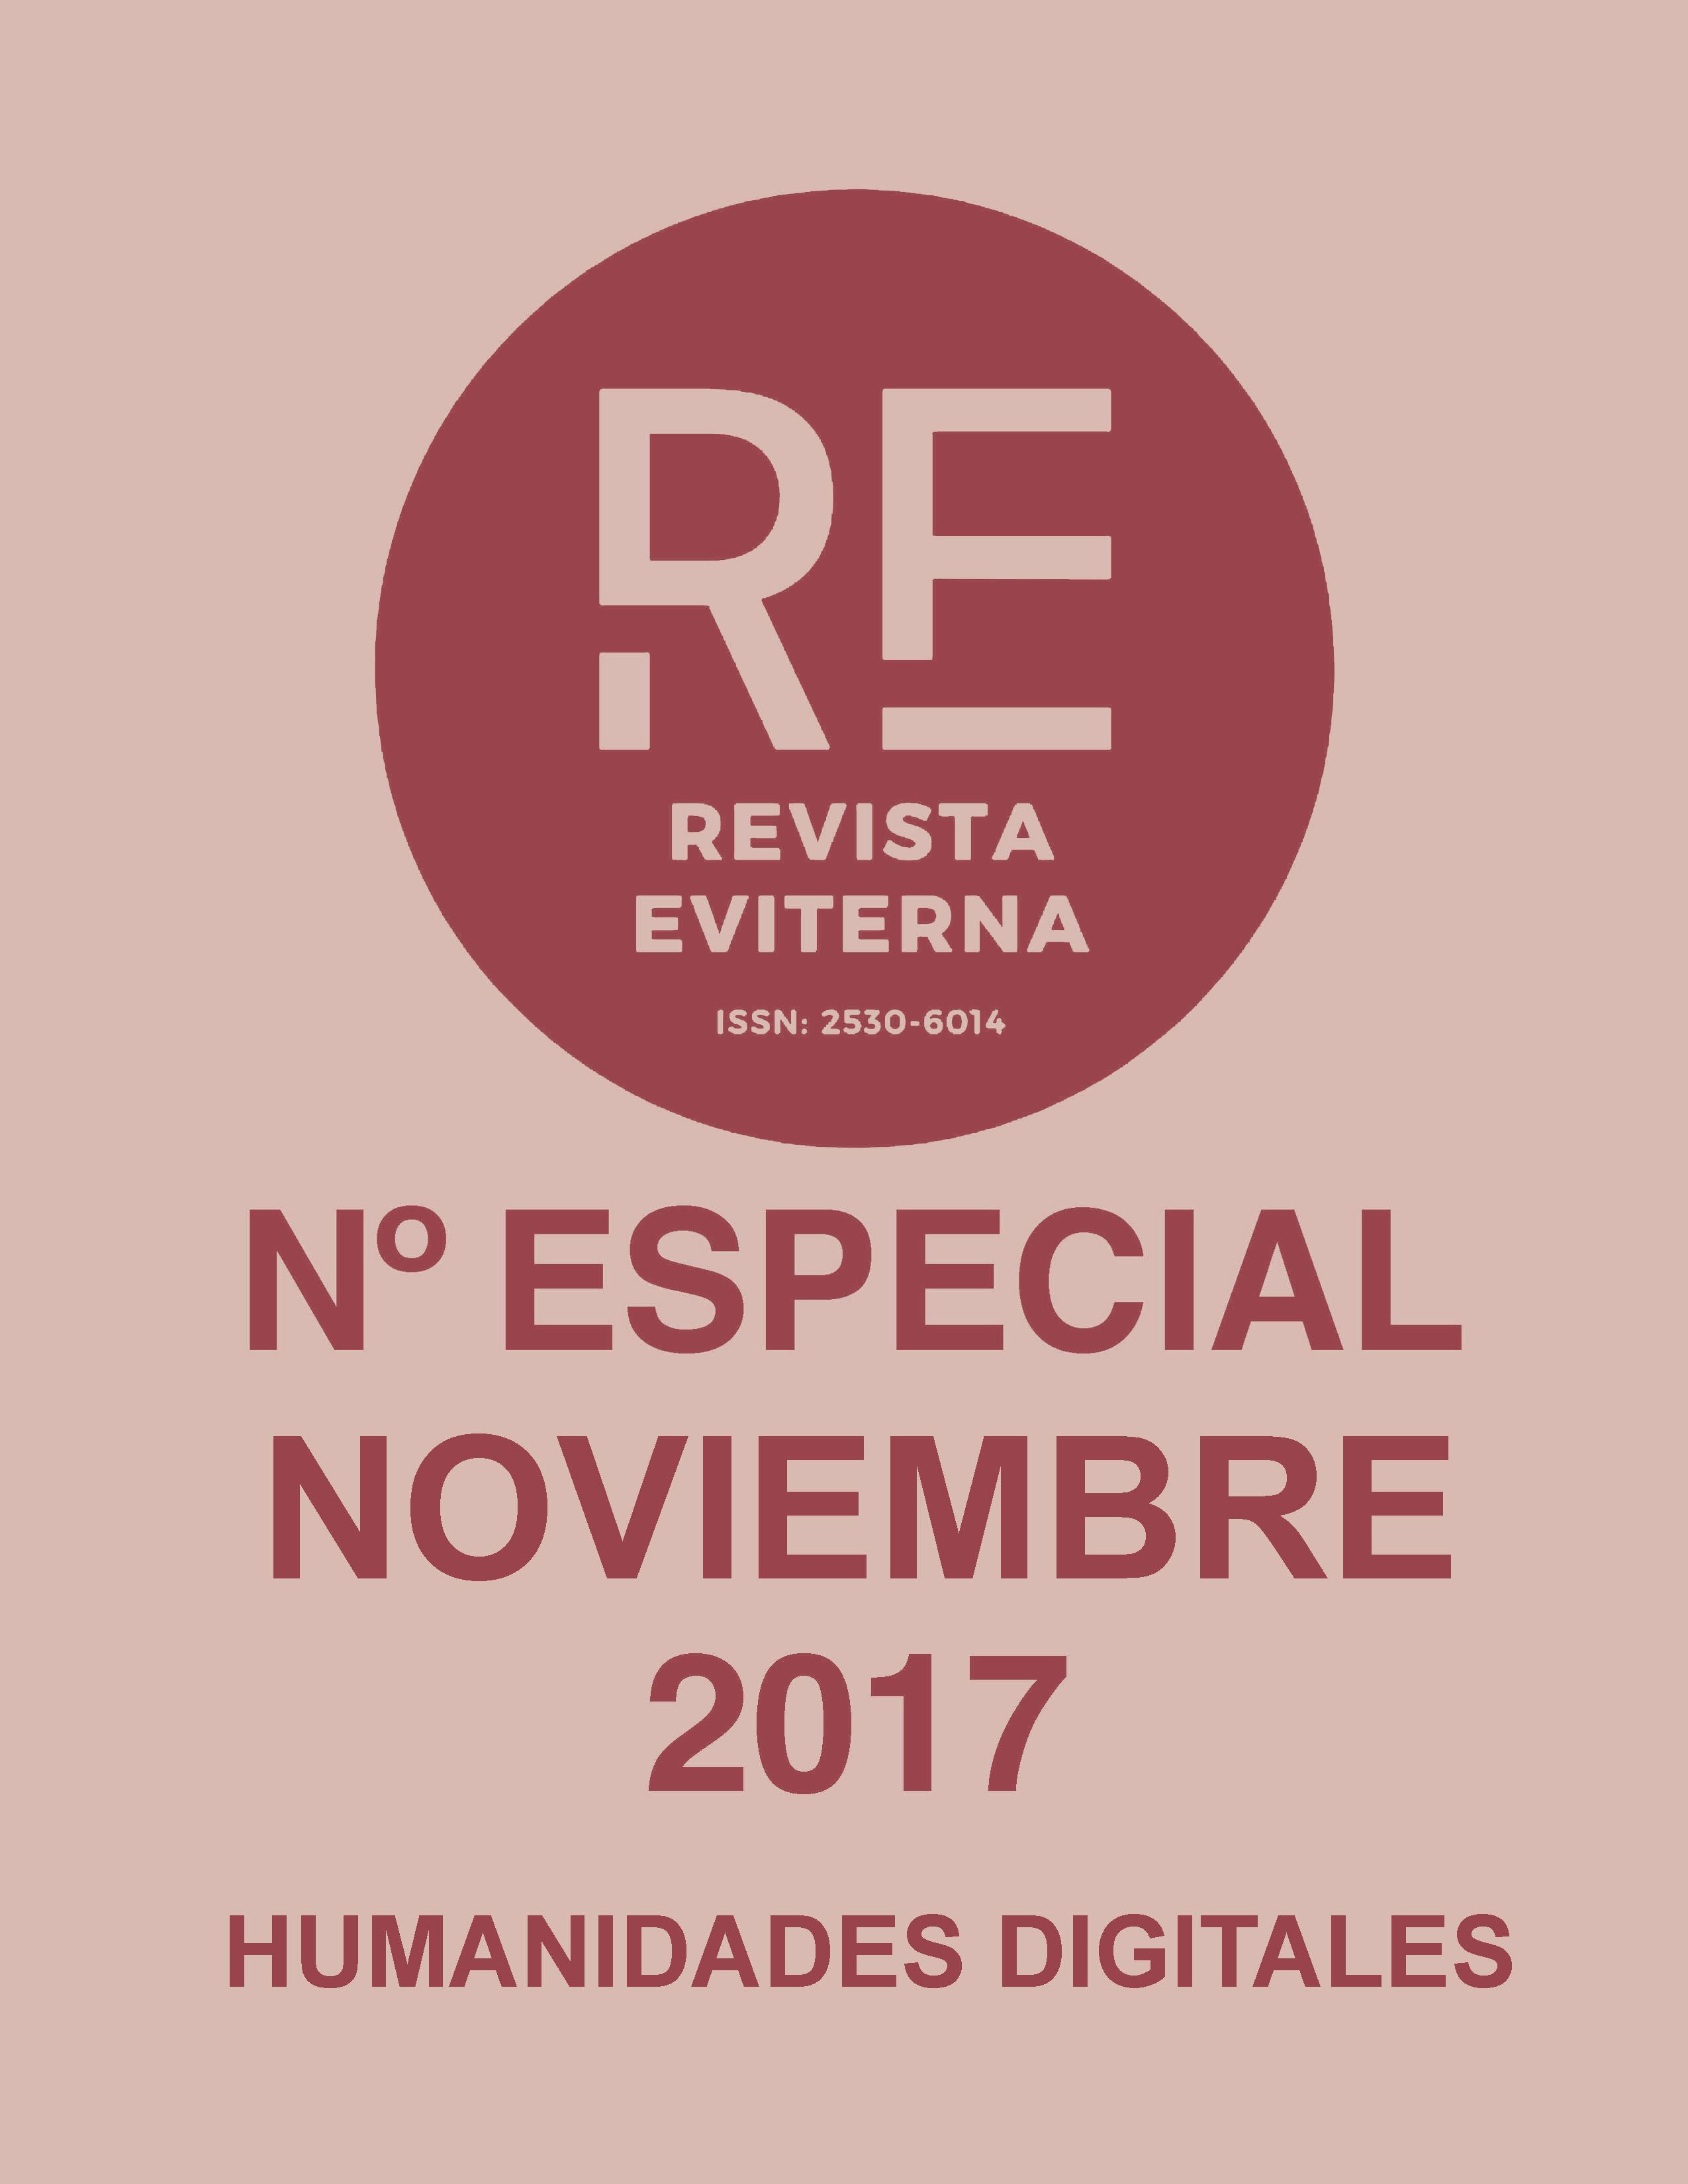 					View No. Especial 2 (2017): Revista Eviterna Nº Especial 2, noviembre 2017
				